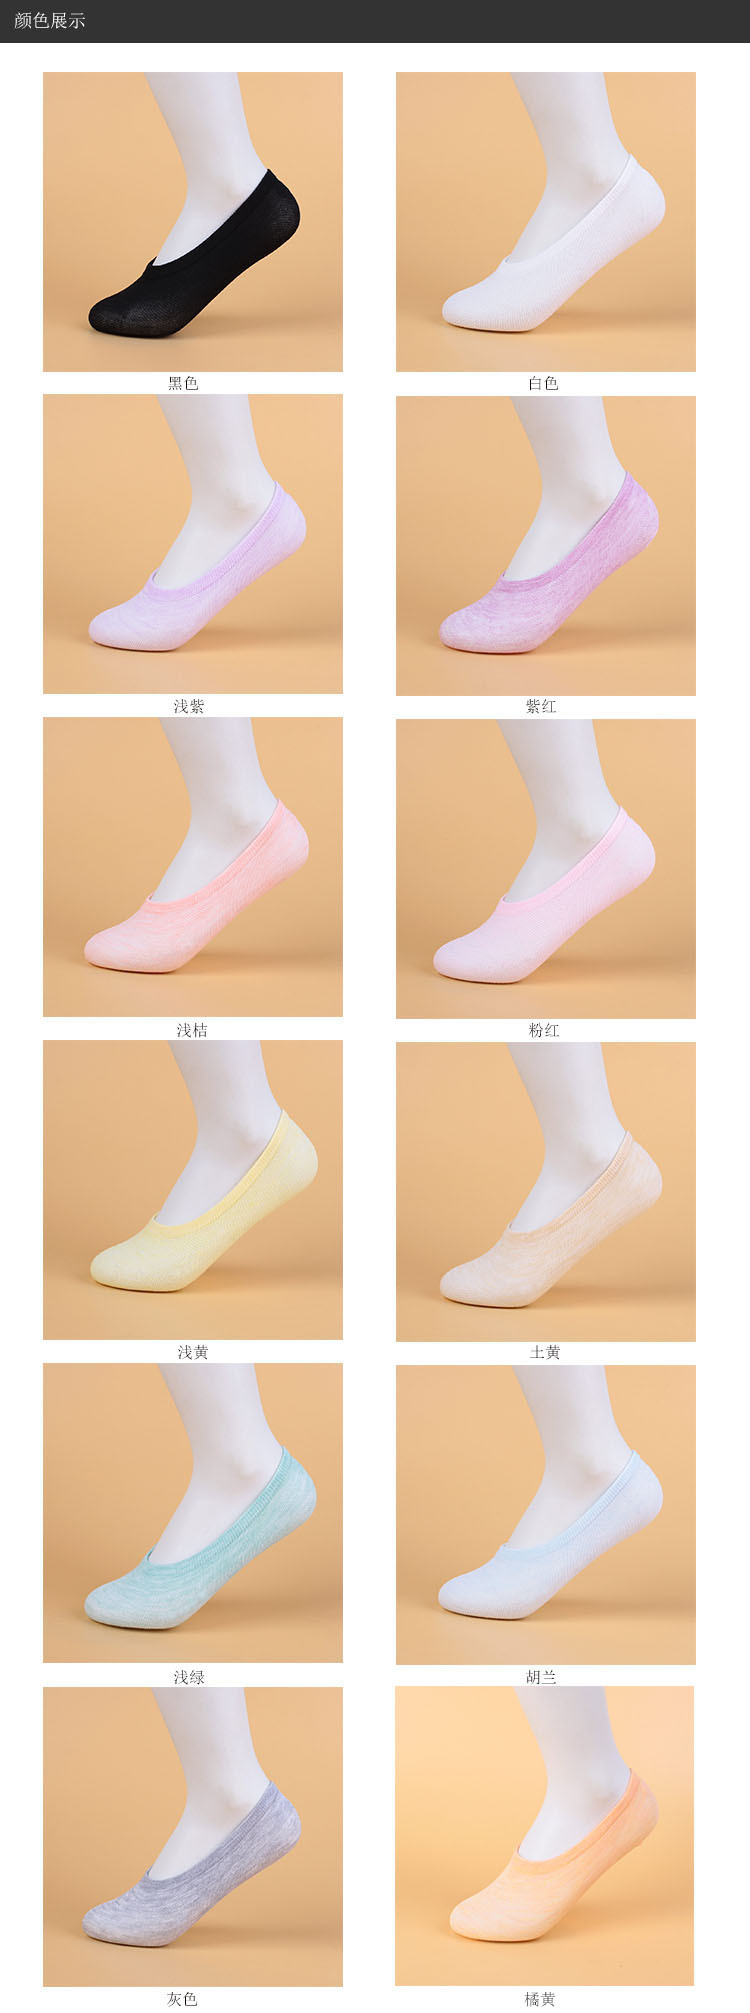 优上品 女士夏秋季纯色彩棉隐形袜子 厂家直销 浅口低帮女士船袜示例图4